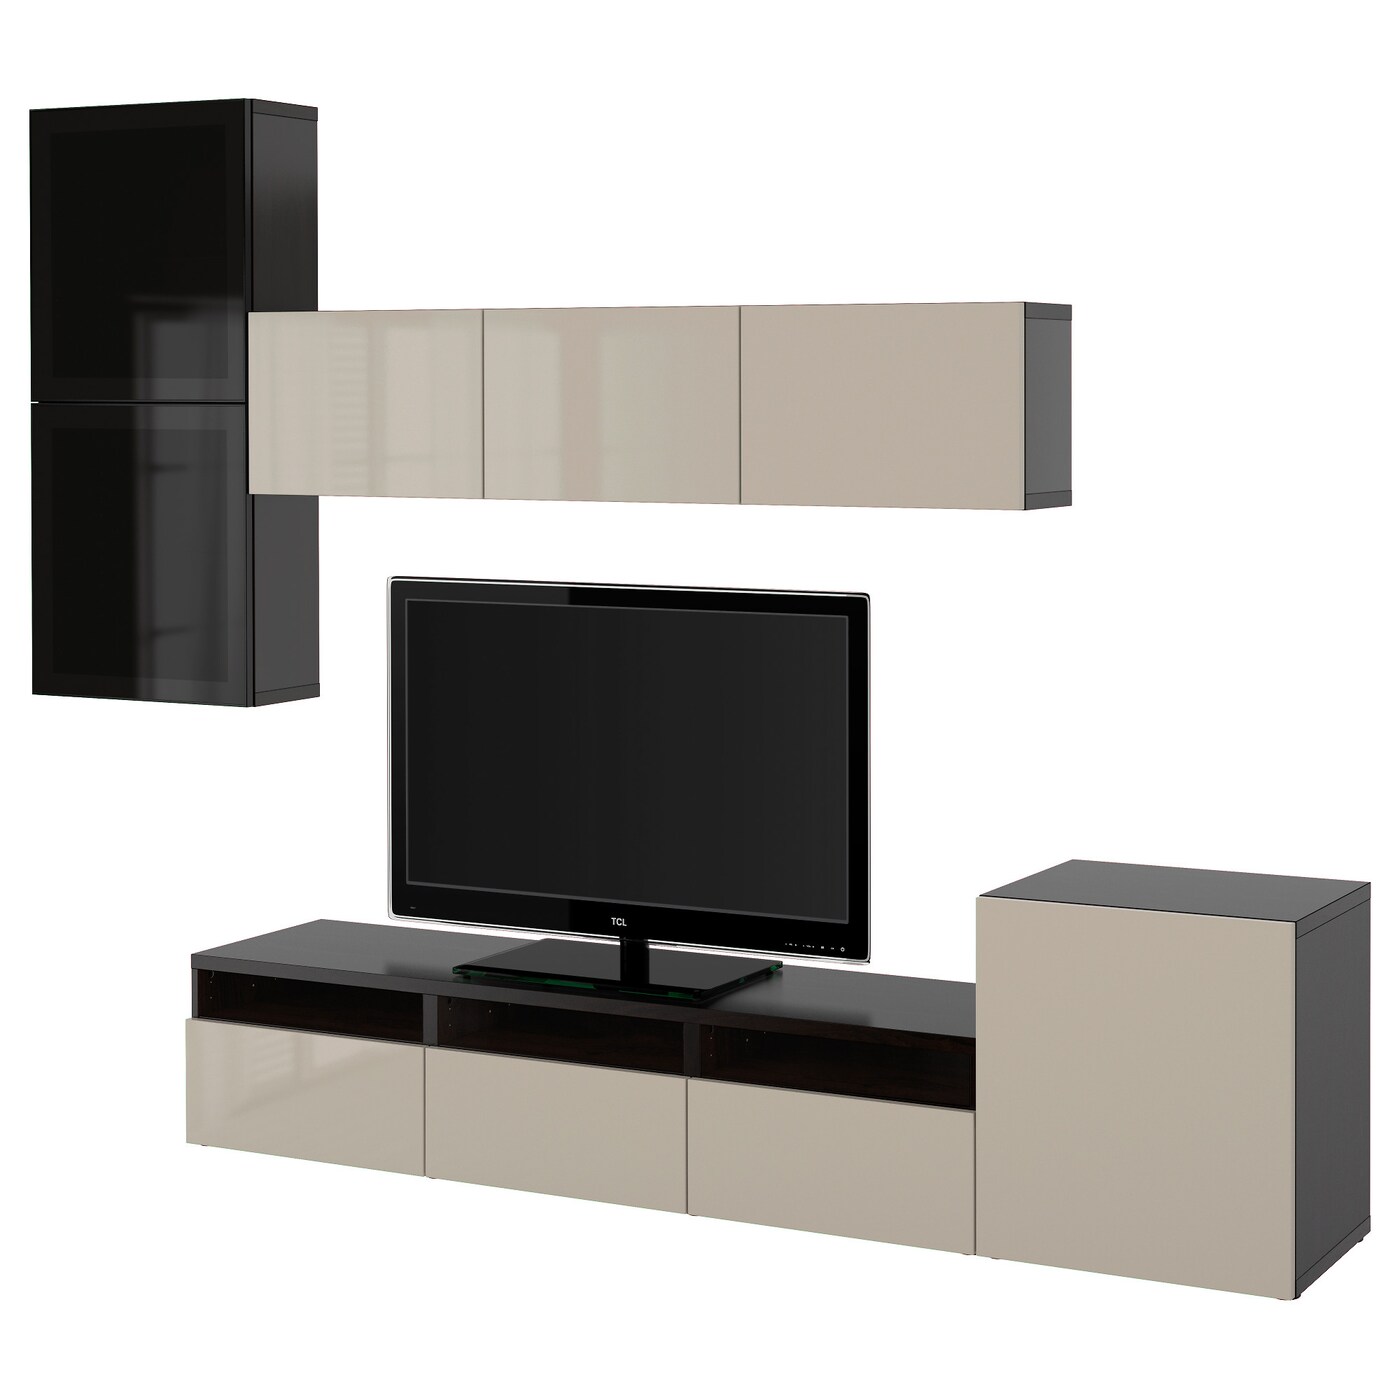 Комбинация для хранения ТВ - IKEA BESTÅ/BESTA, 211x42x300см, черный/светло-коричневый, БЕСТО ИКЕА